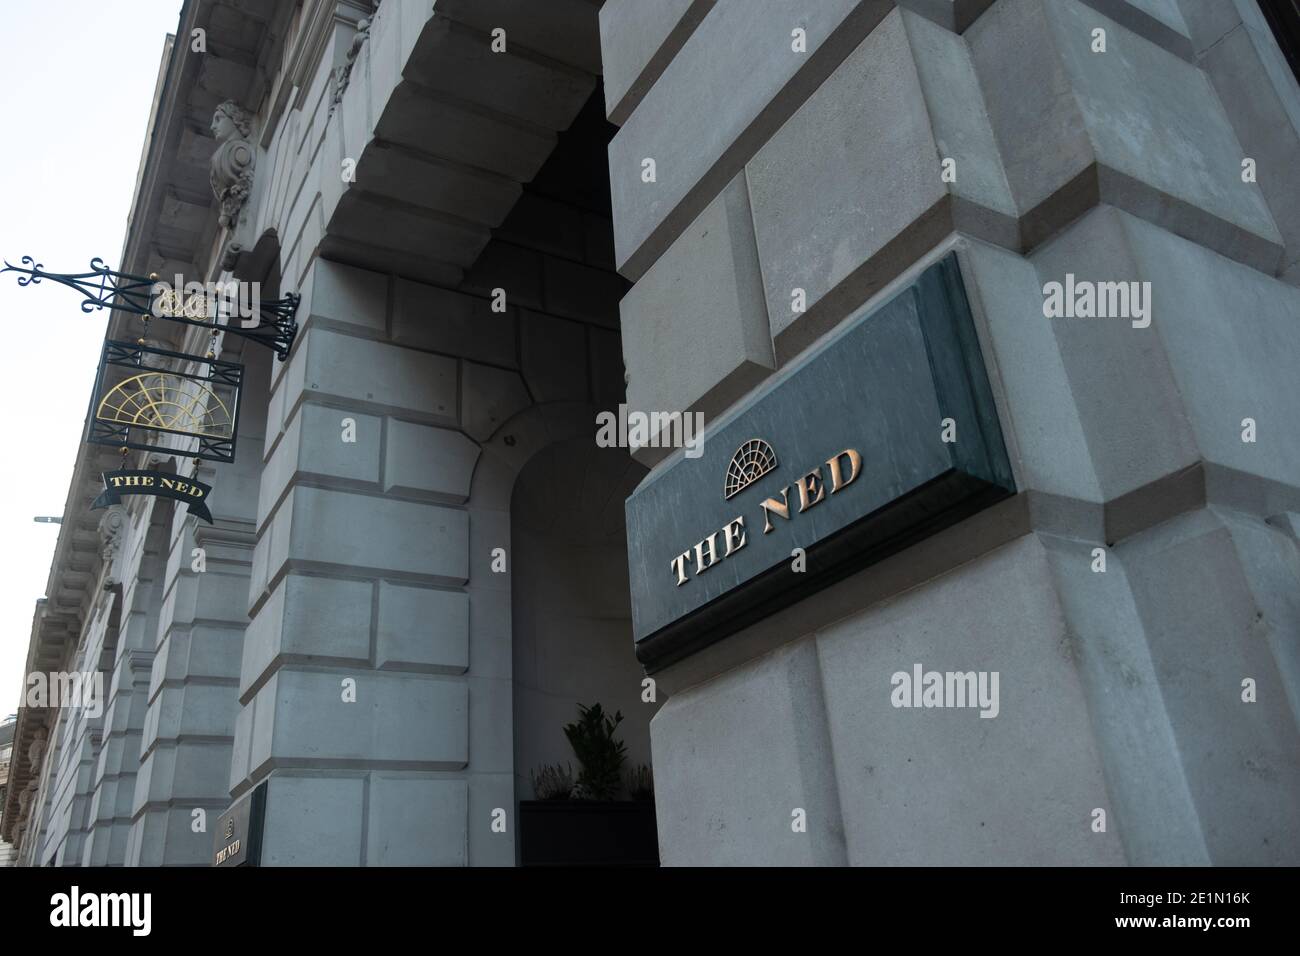 LONDRES-The Ned, señalización del hotel de 5 estrellas y club privado de miembros en la ciudad de Londres Foto de stock